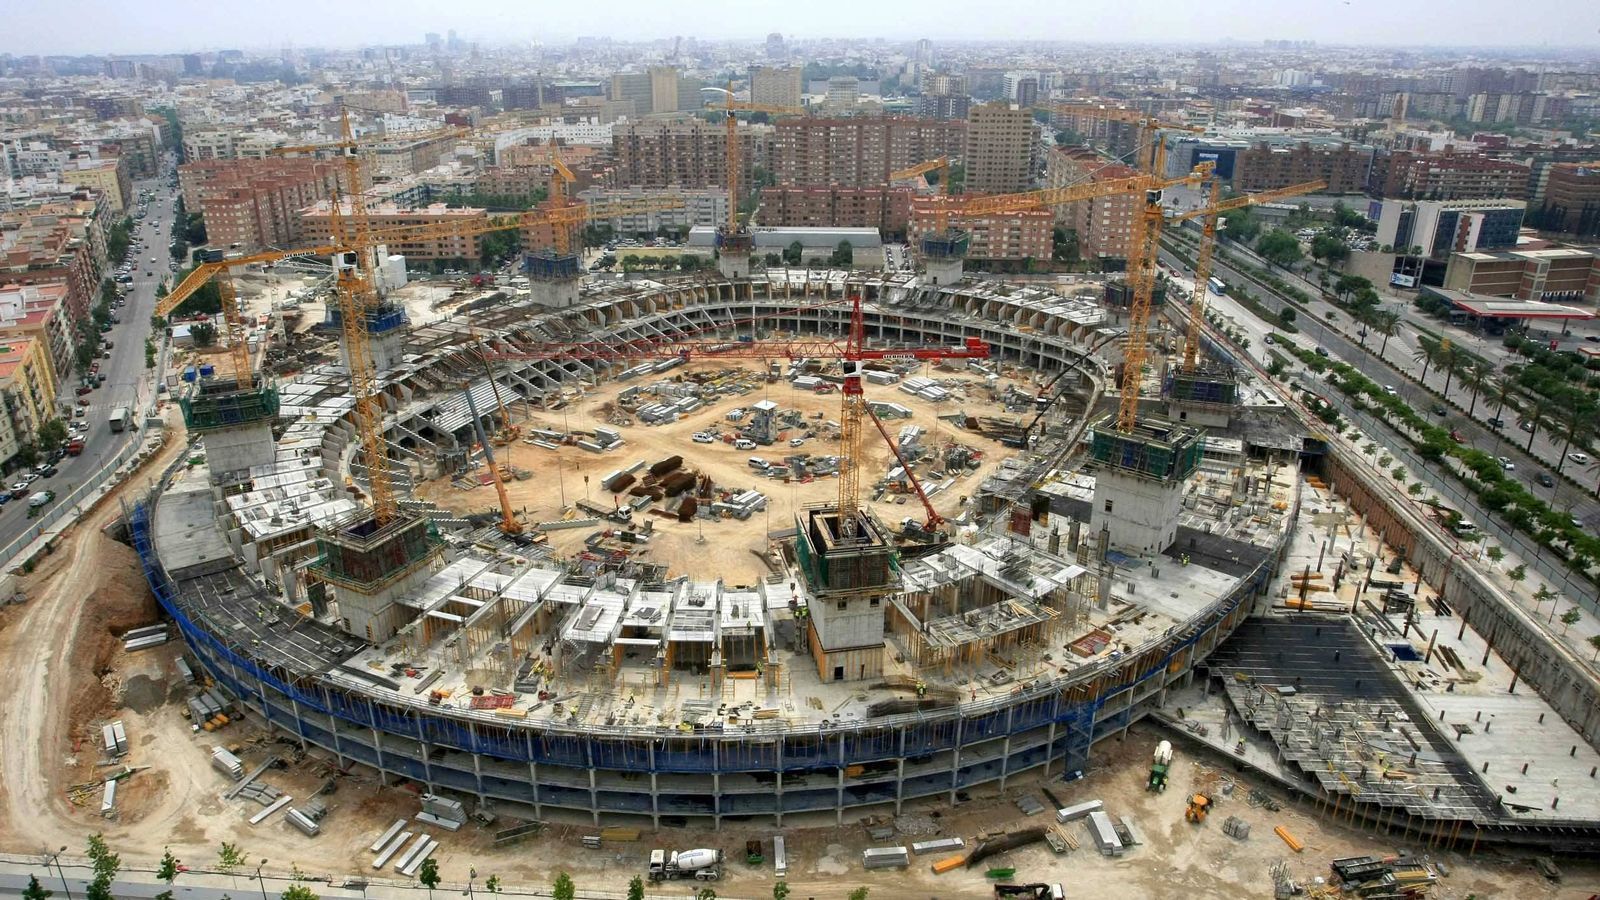 
                <strong>FC Valencia</strong><br>
                Eines der langwierigsten Stadion-Projekte des 21. Jahrhunderts wird in Valencia umgesetzt bzw. eben gerade nicht umgesetzt. 2007 begann der Bau des Nou Mestalla, doch nur zwei Jahre später wurden die Arbeiten aufgrund von Finanzierungsproblemen gestoppt. Seitdem verzögert sich der geplante Fertigstellungstermin immer wieder. Nun soll das Stadion offenbar bis 2021 eröffnet werden und dann 75.000 Zuschauern Platz bieten.
              